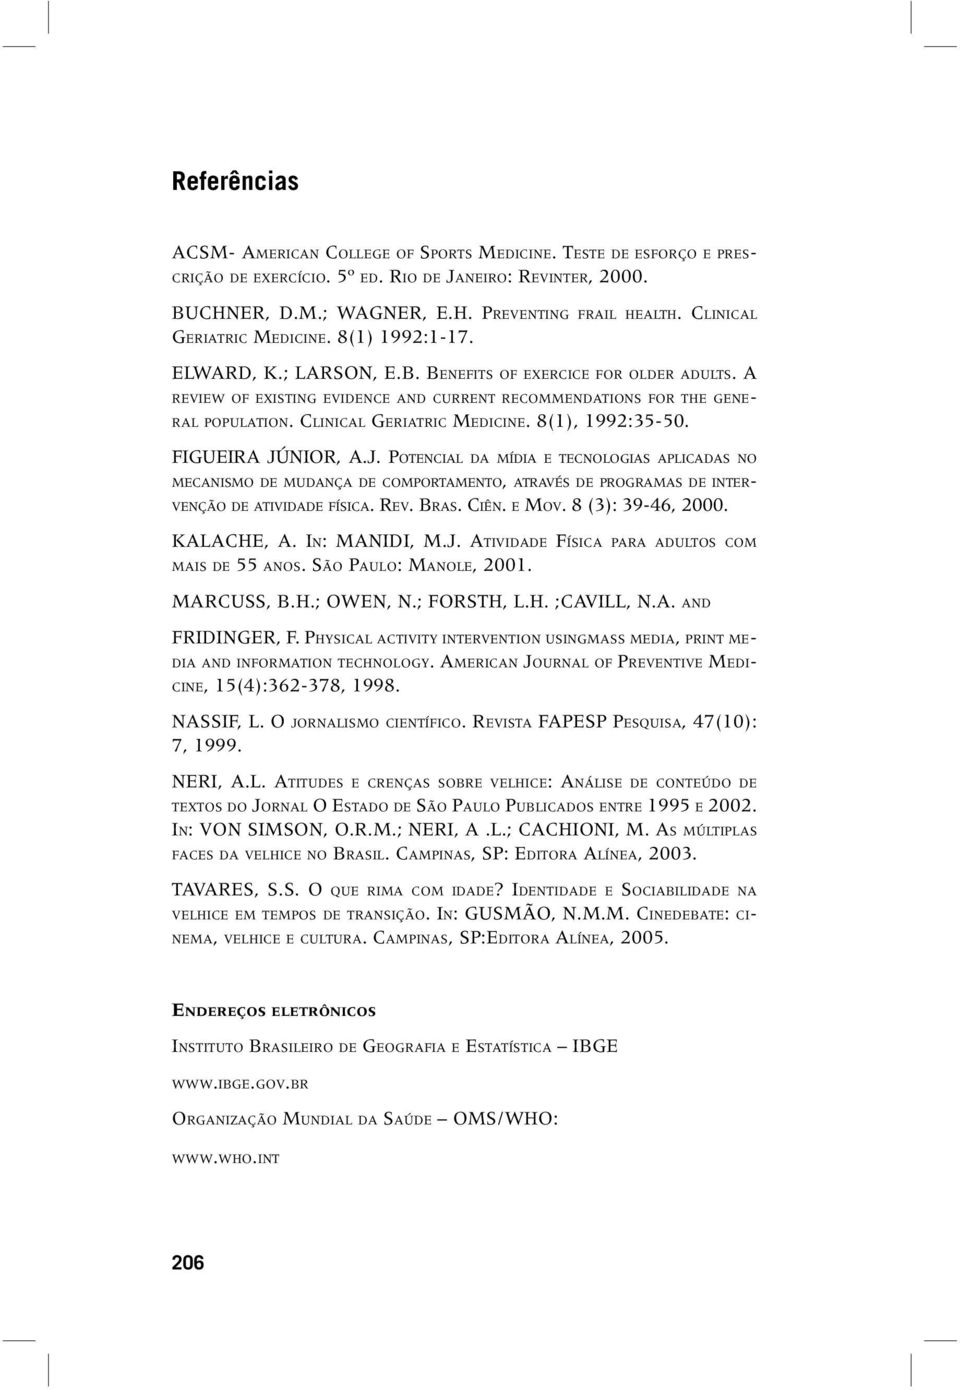 CLINICAL GERIATRIC MEDICINE. 8(1), 1992:35-50. FIGUEIRA JÚ